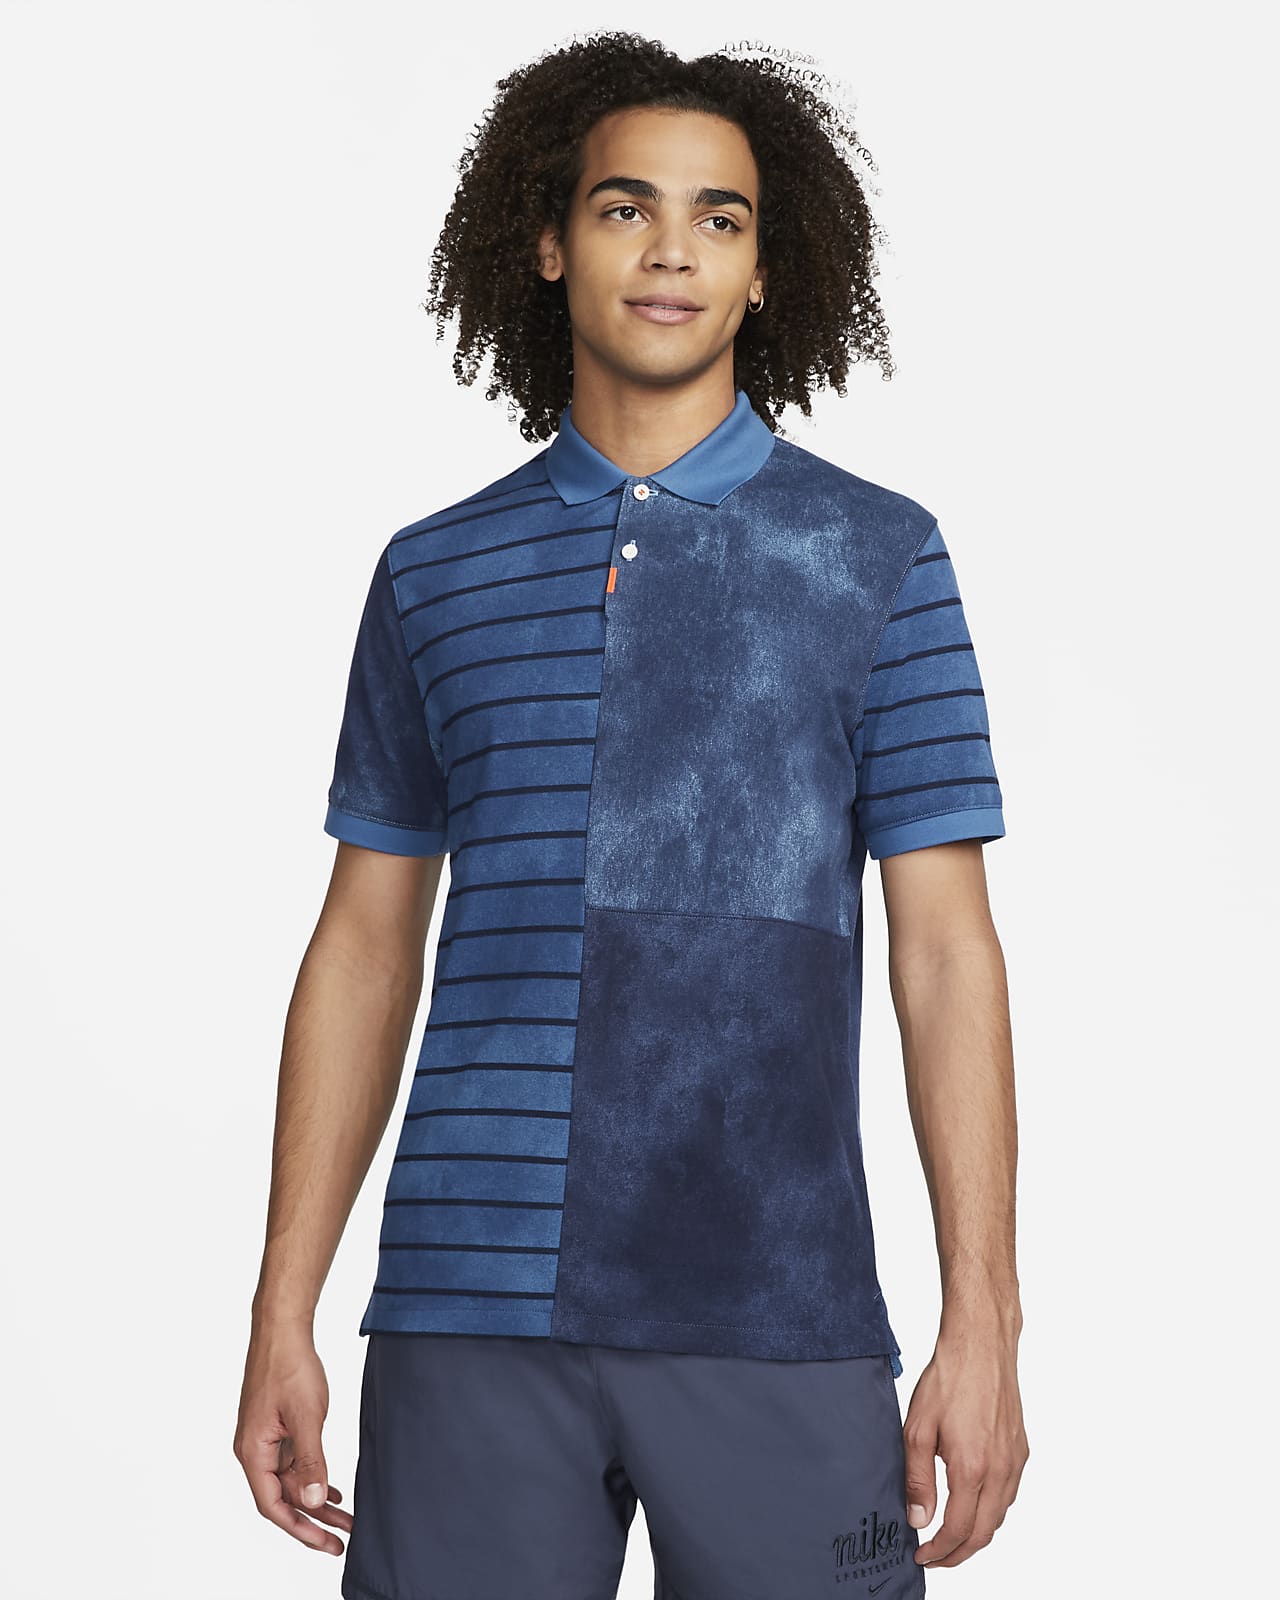 The Nike Polo Herren-Poloshirt